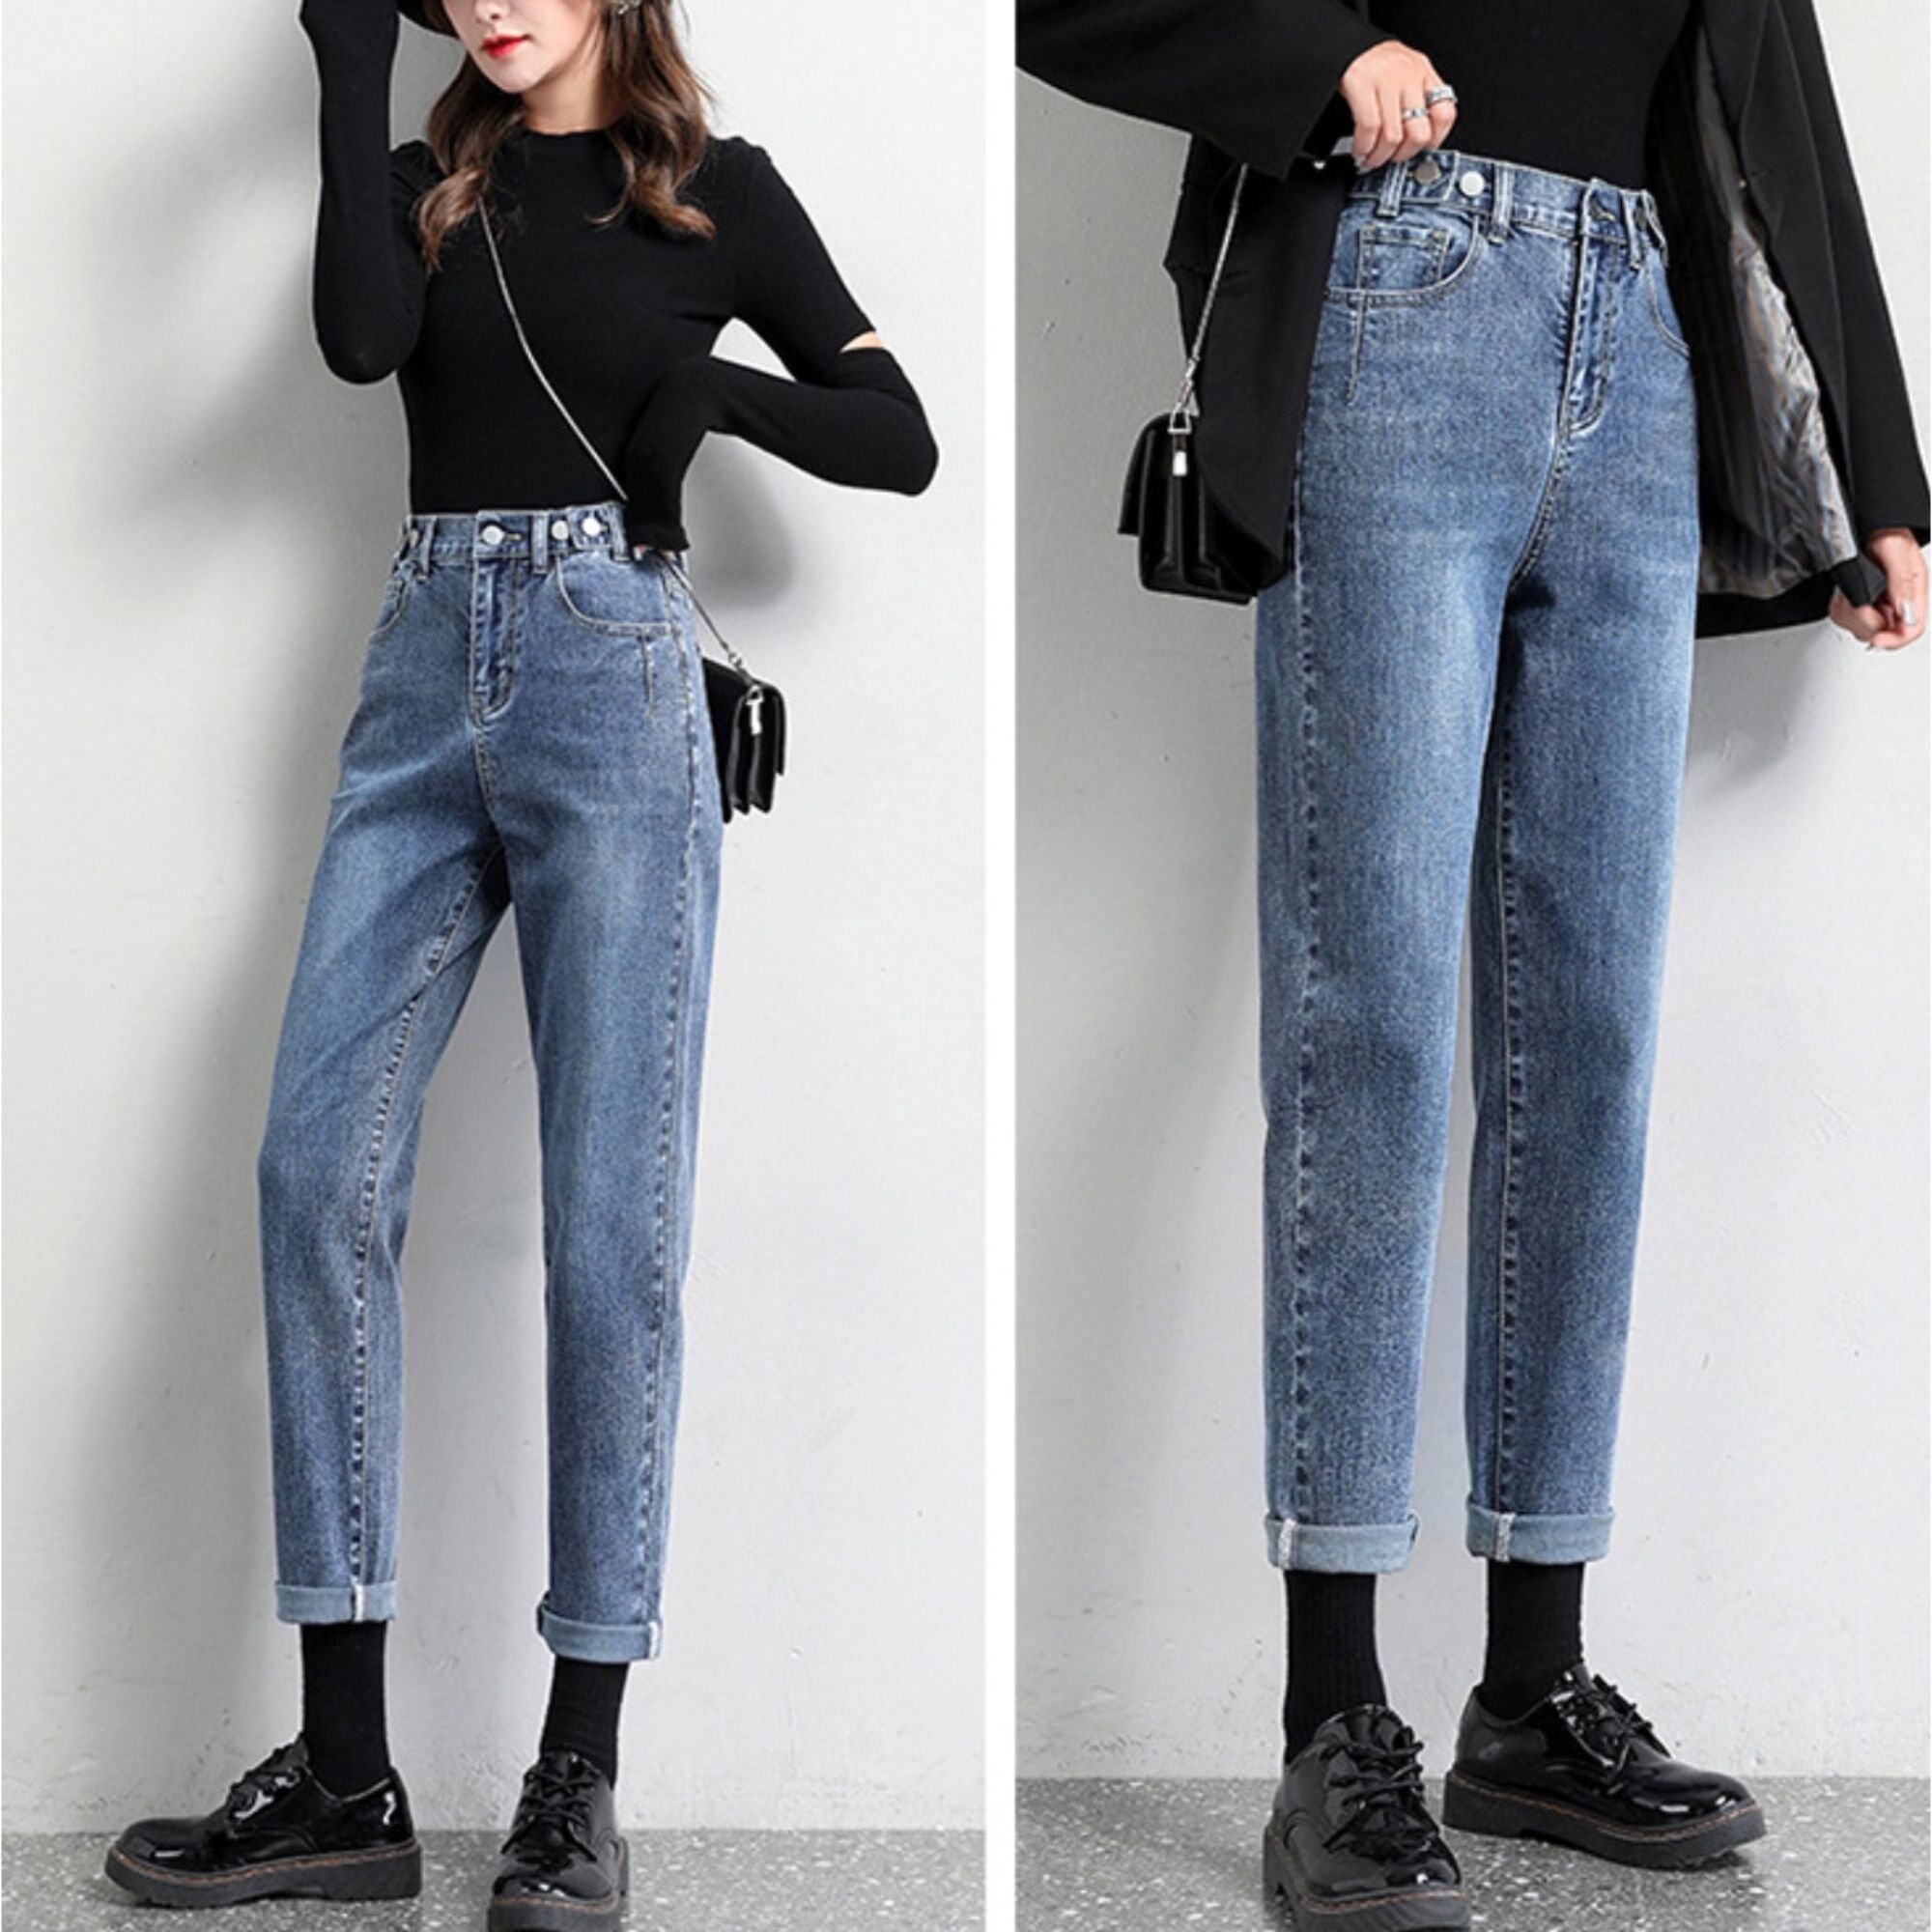 High Waist Mom Jeans / Korean fashion / Denim / Straight cut / | Etsy